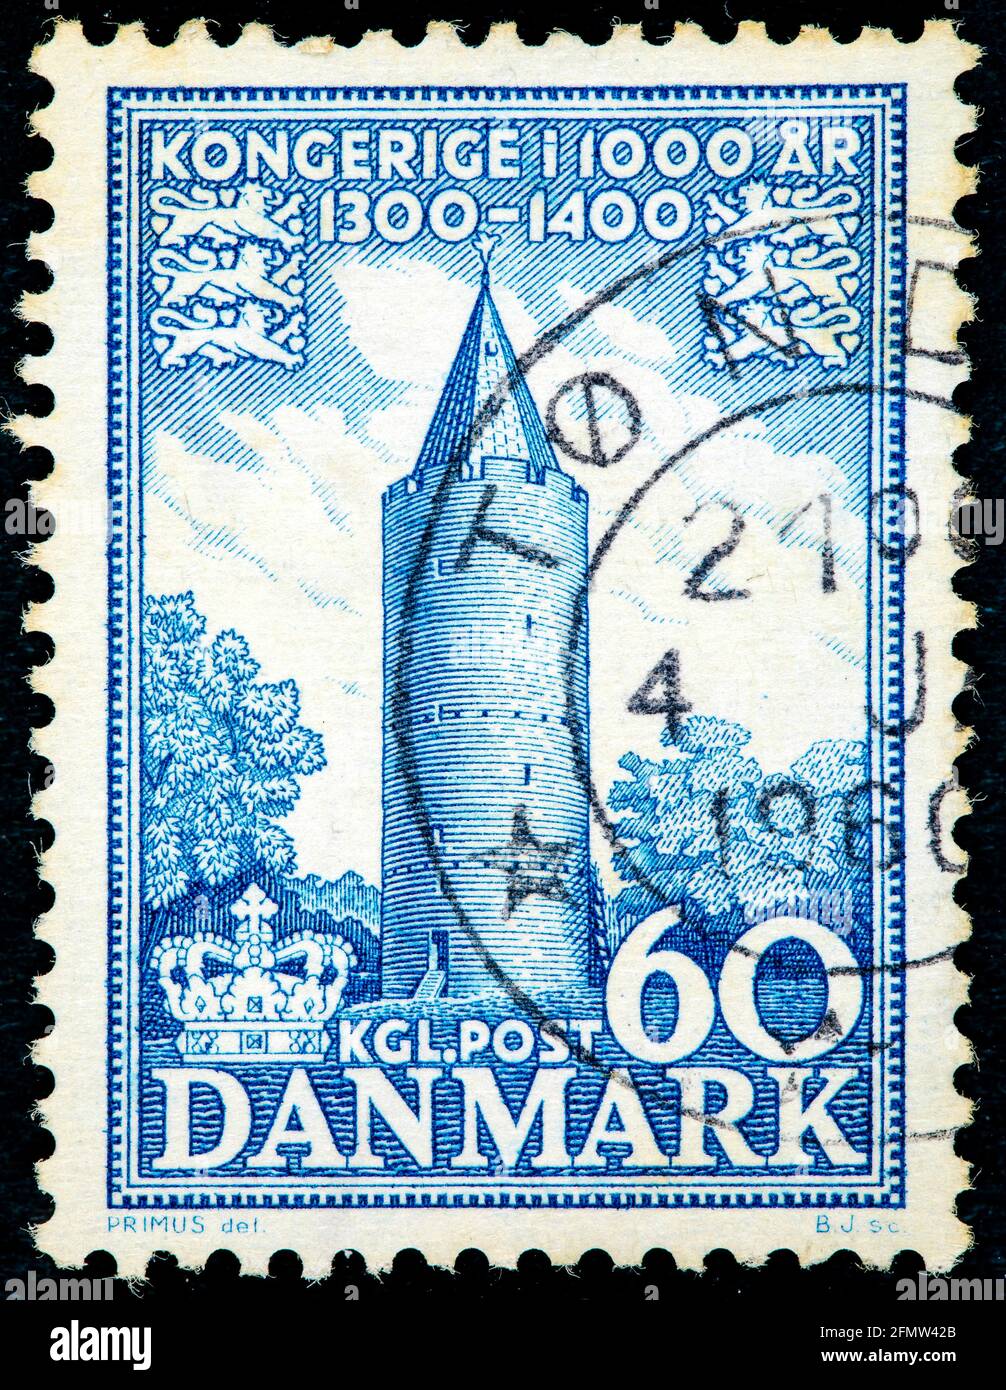 DANEMARK - VERS 1953: Timbre imprimé au Danemark montre Goose Tower, Vordingbord, série 1000 ans du Royaume danois, vers 1954 Banque D'Images